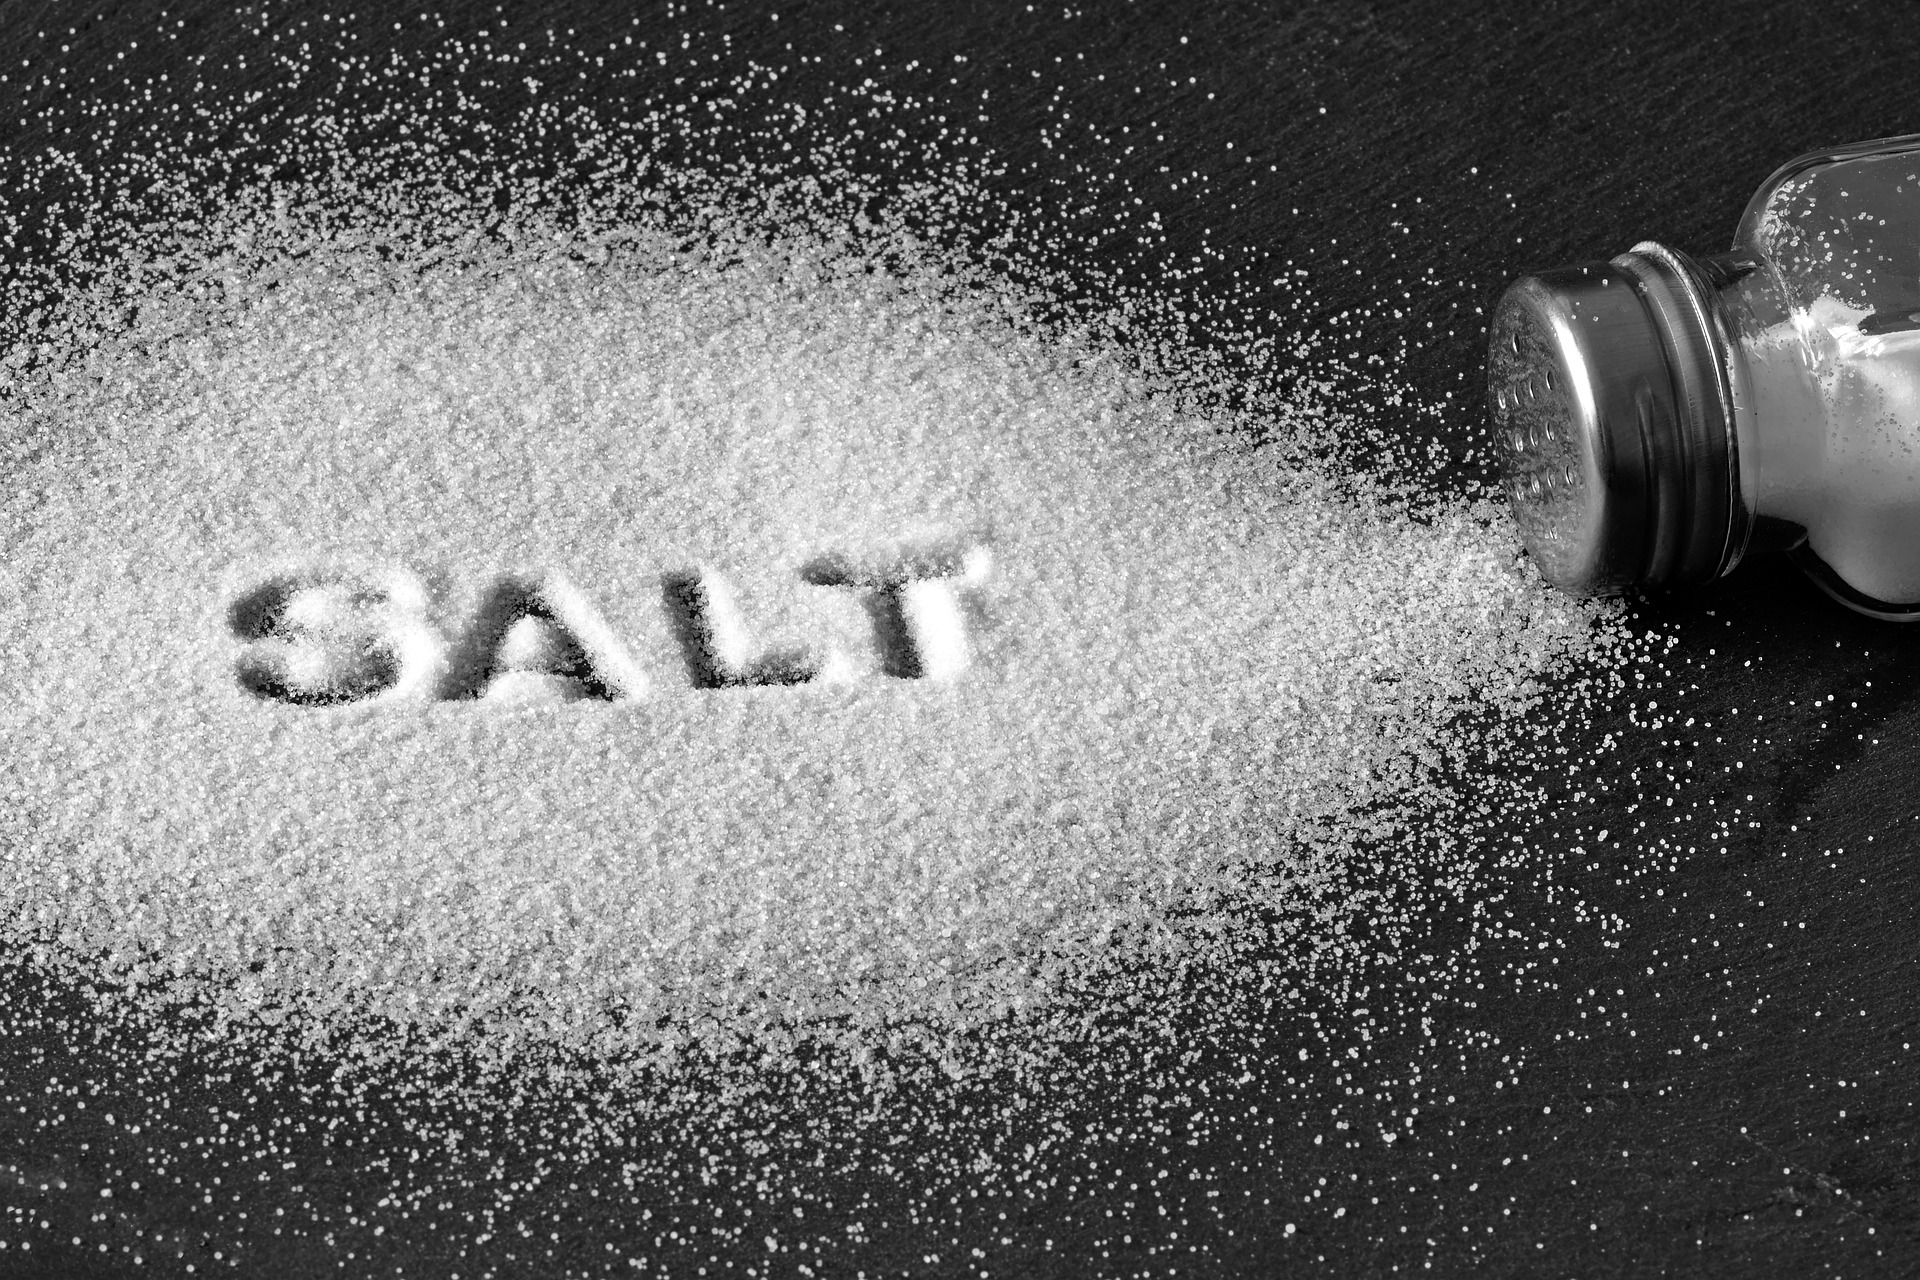 Do you need to shake a salt habit?